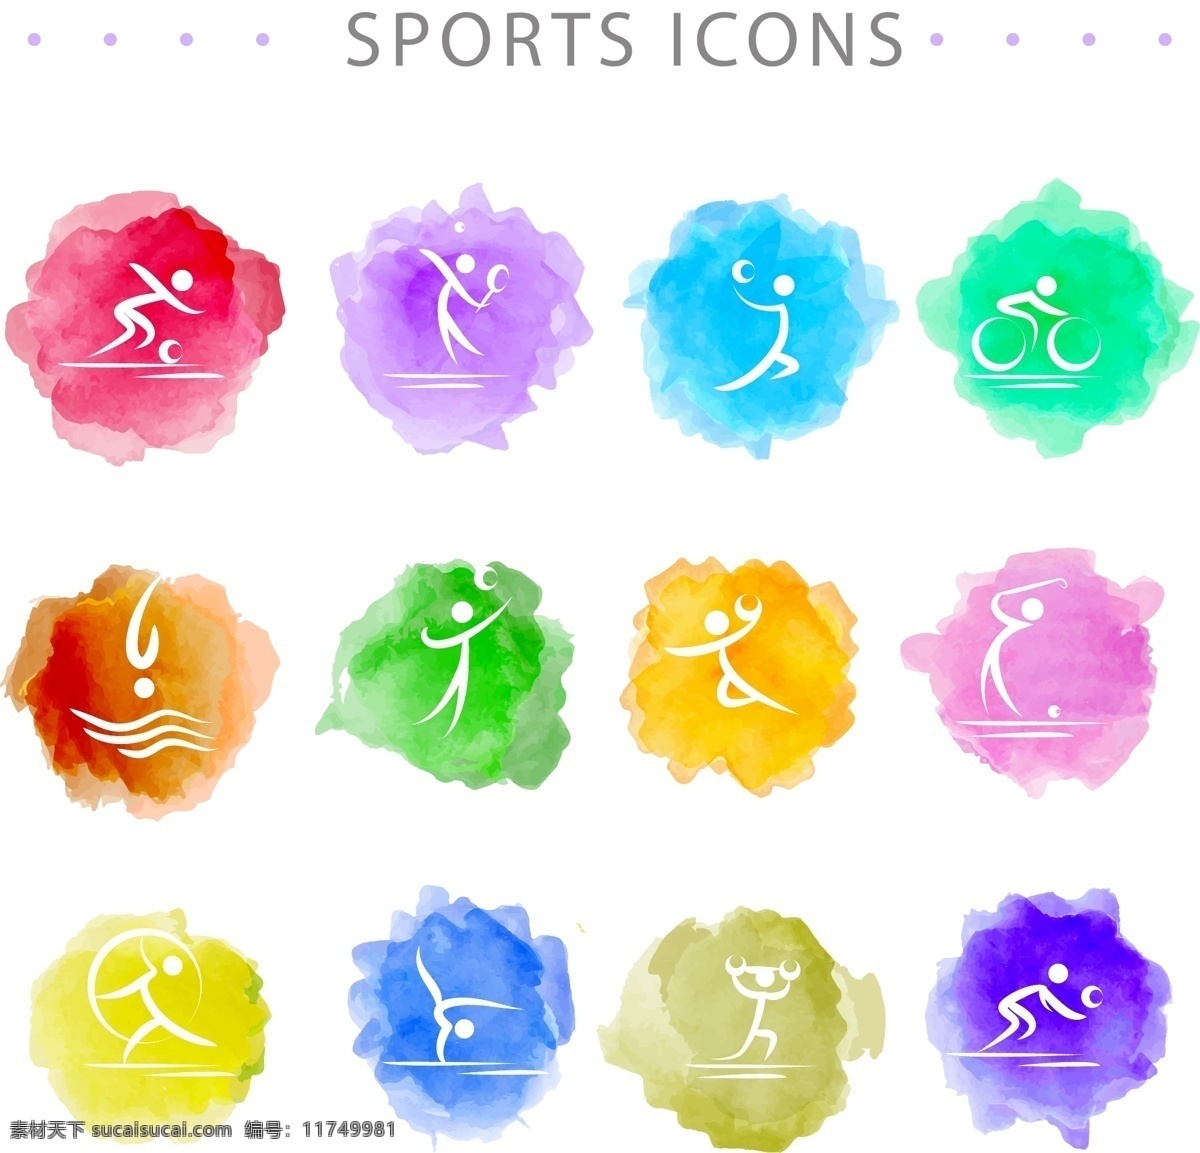 款 水彩 绘 运动 图标 矢量 足球 篮球 排球 羽毛球 自行车 跳水 高尔夫 体操 举重 人物 体育 标志图标 其他图标